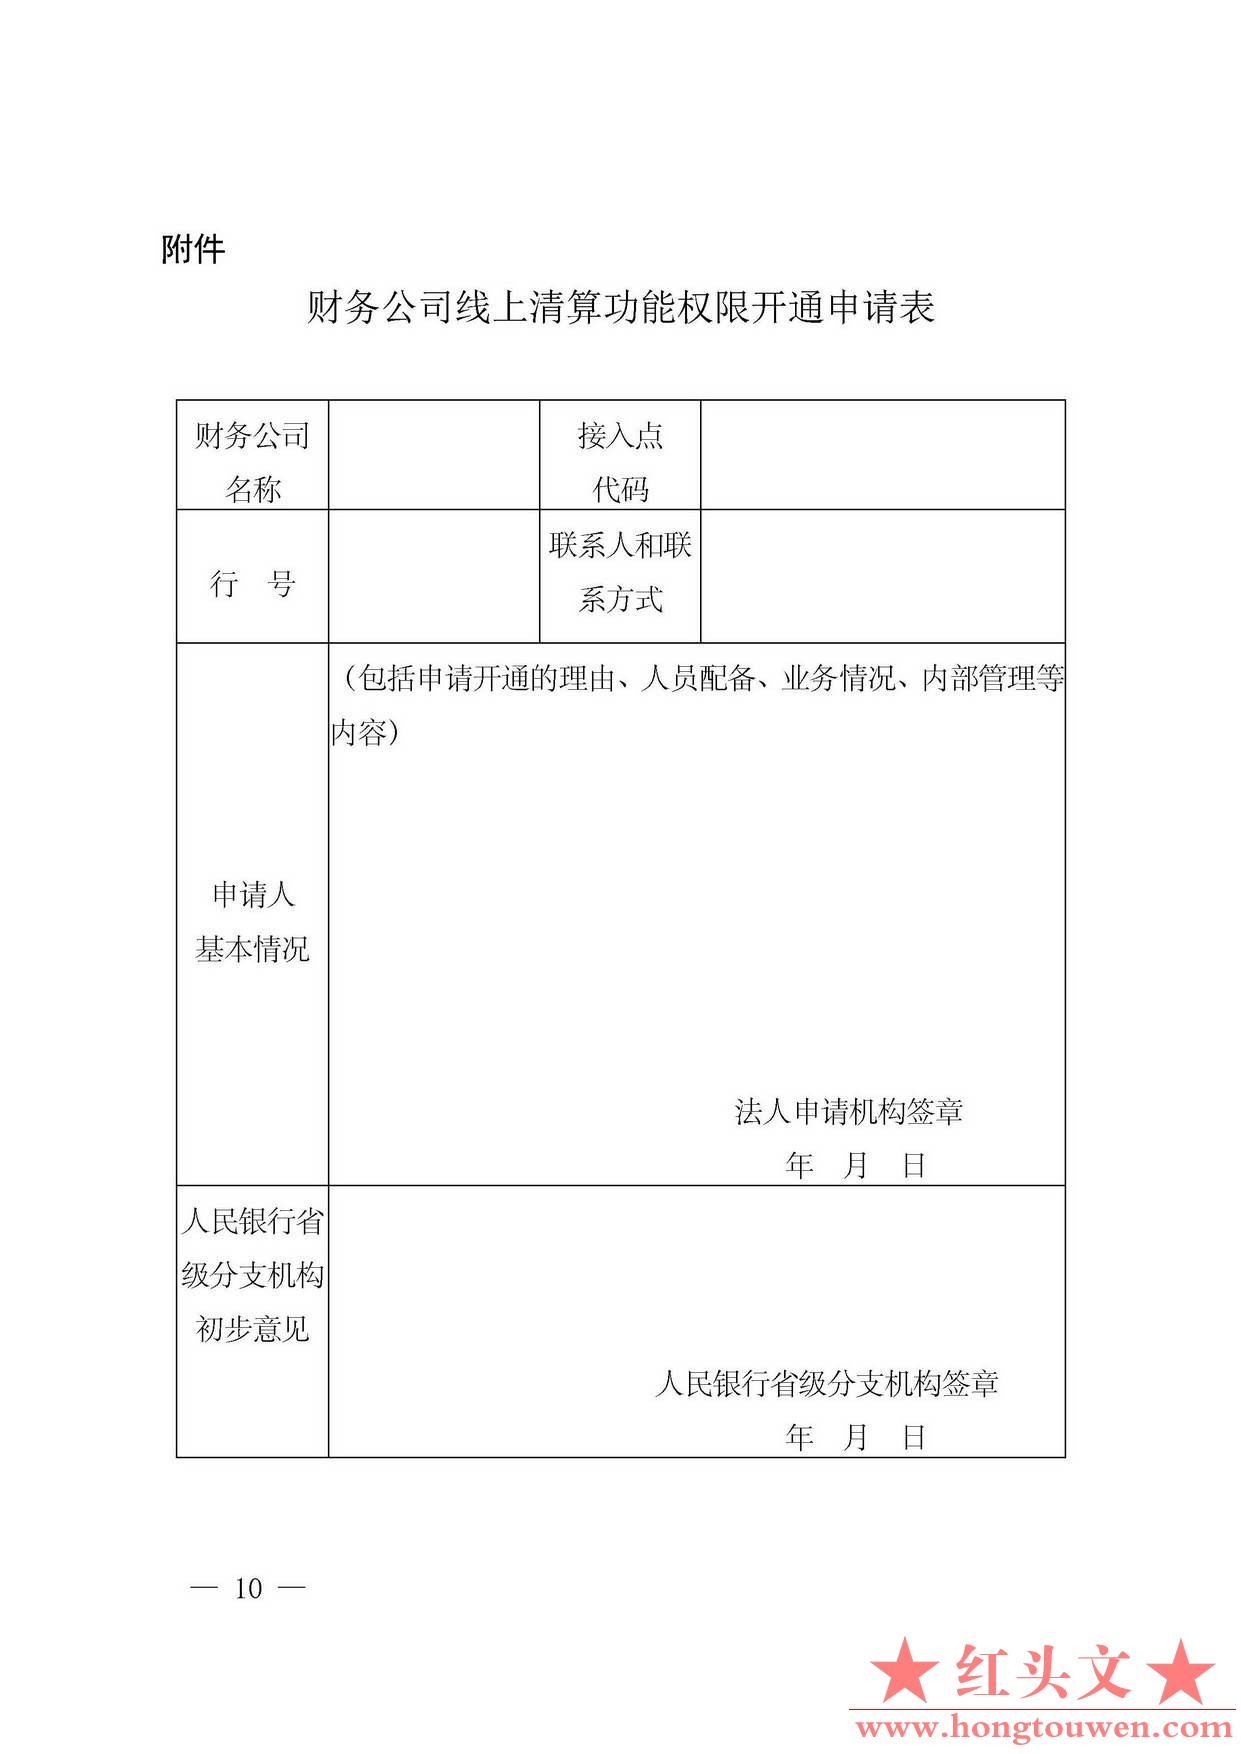 银发[2016]224号-中国人民银行关于规范和促进电子商业汇票业务发展的通知_页面_10.jpg.jpg